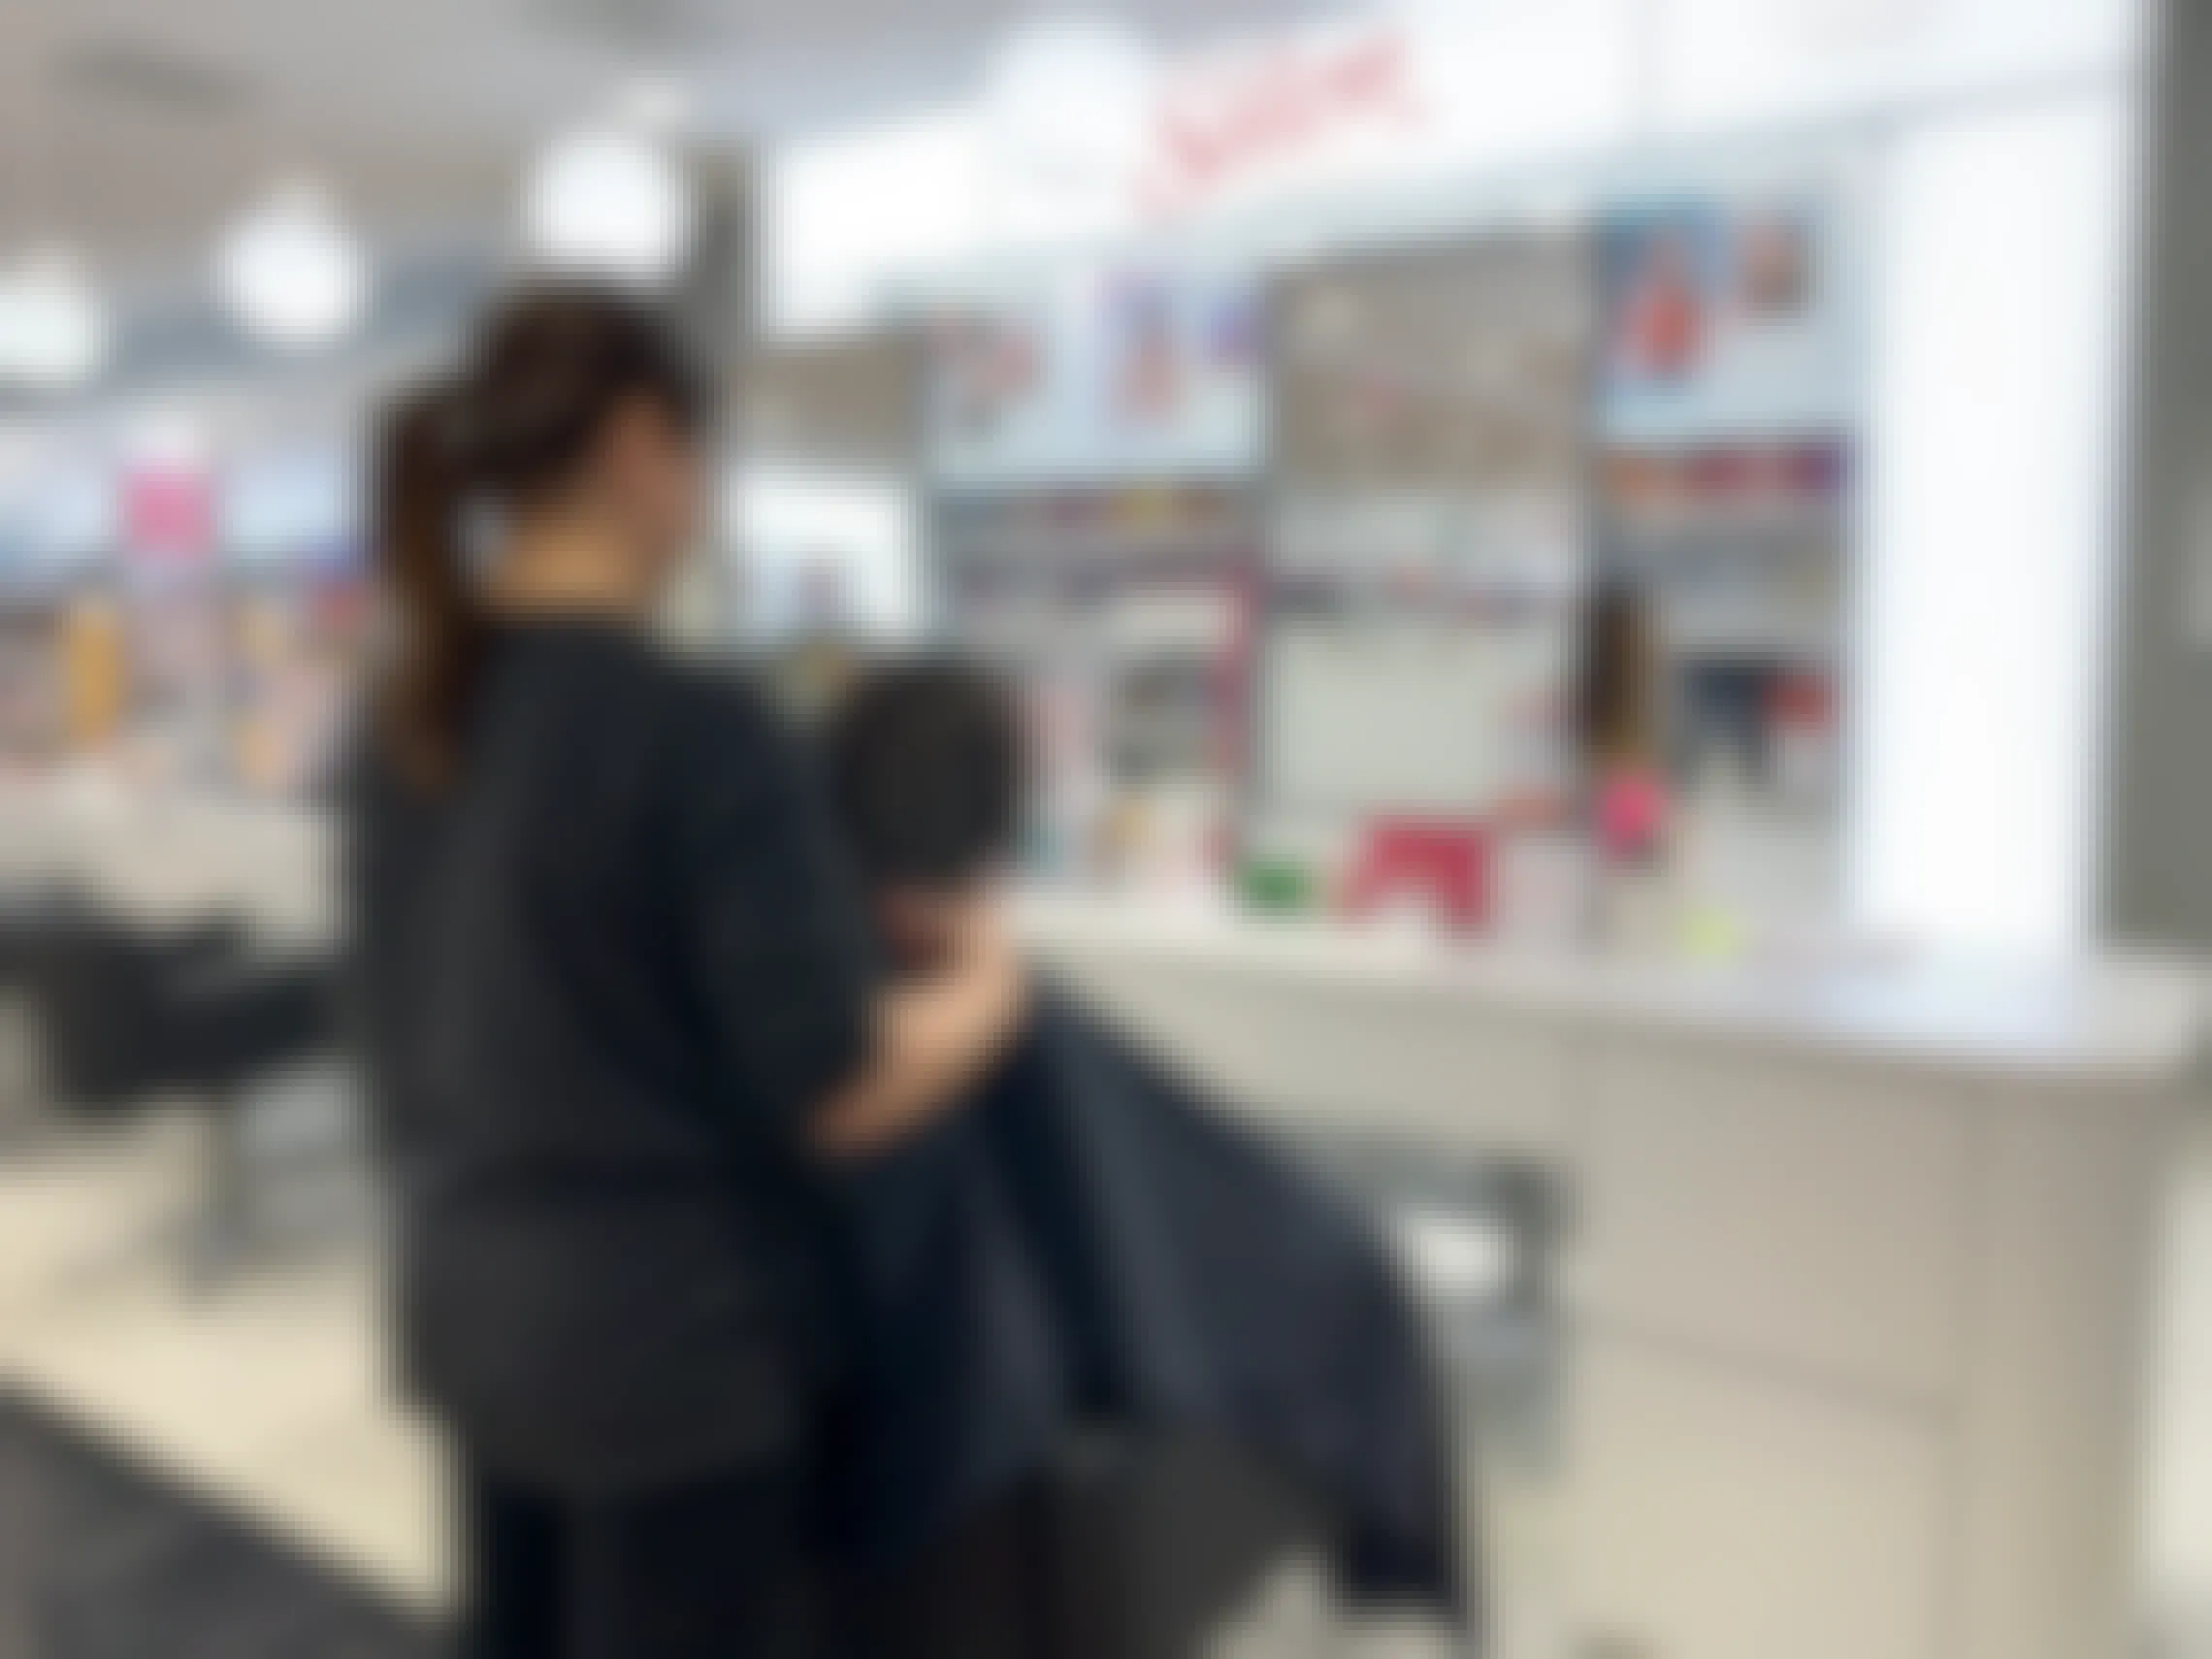 ulta-beauty-salon-sale-2020